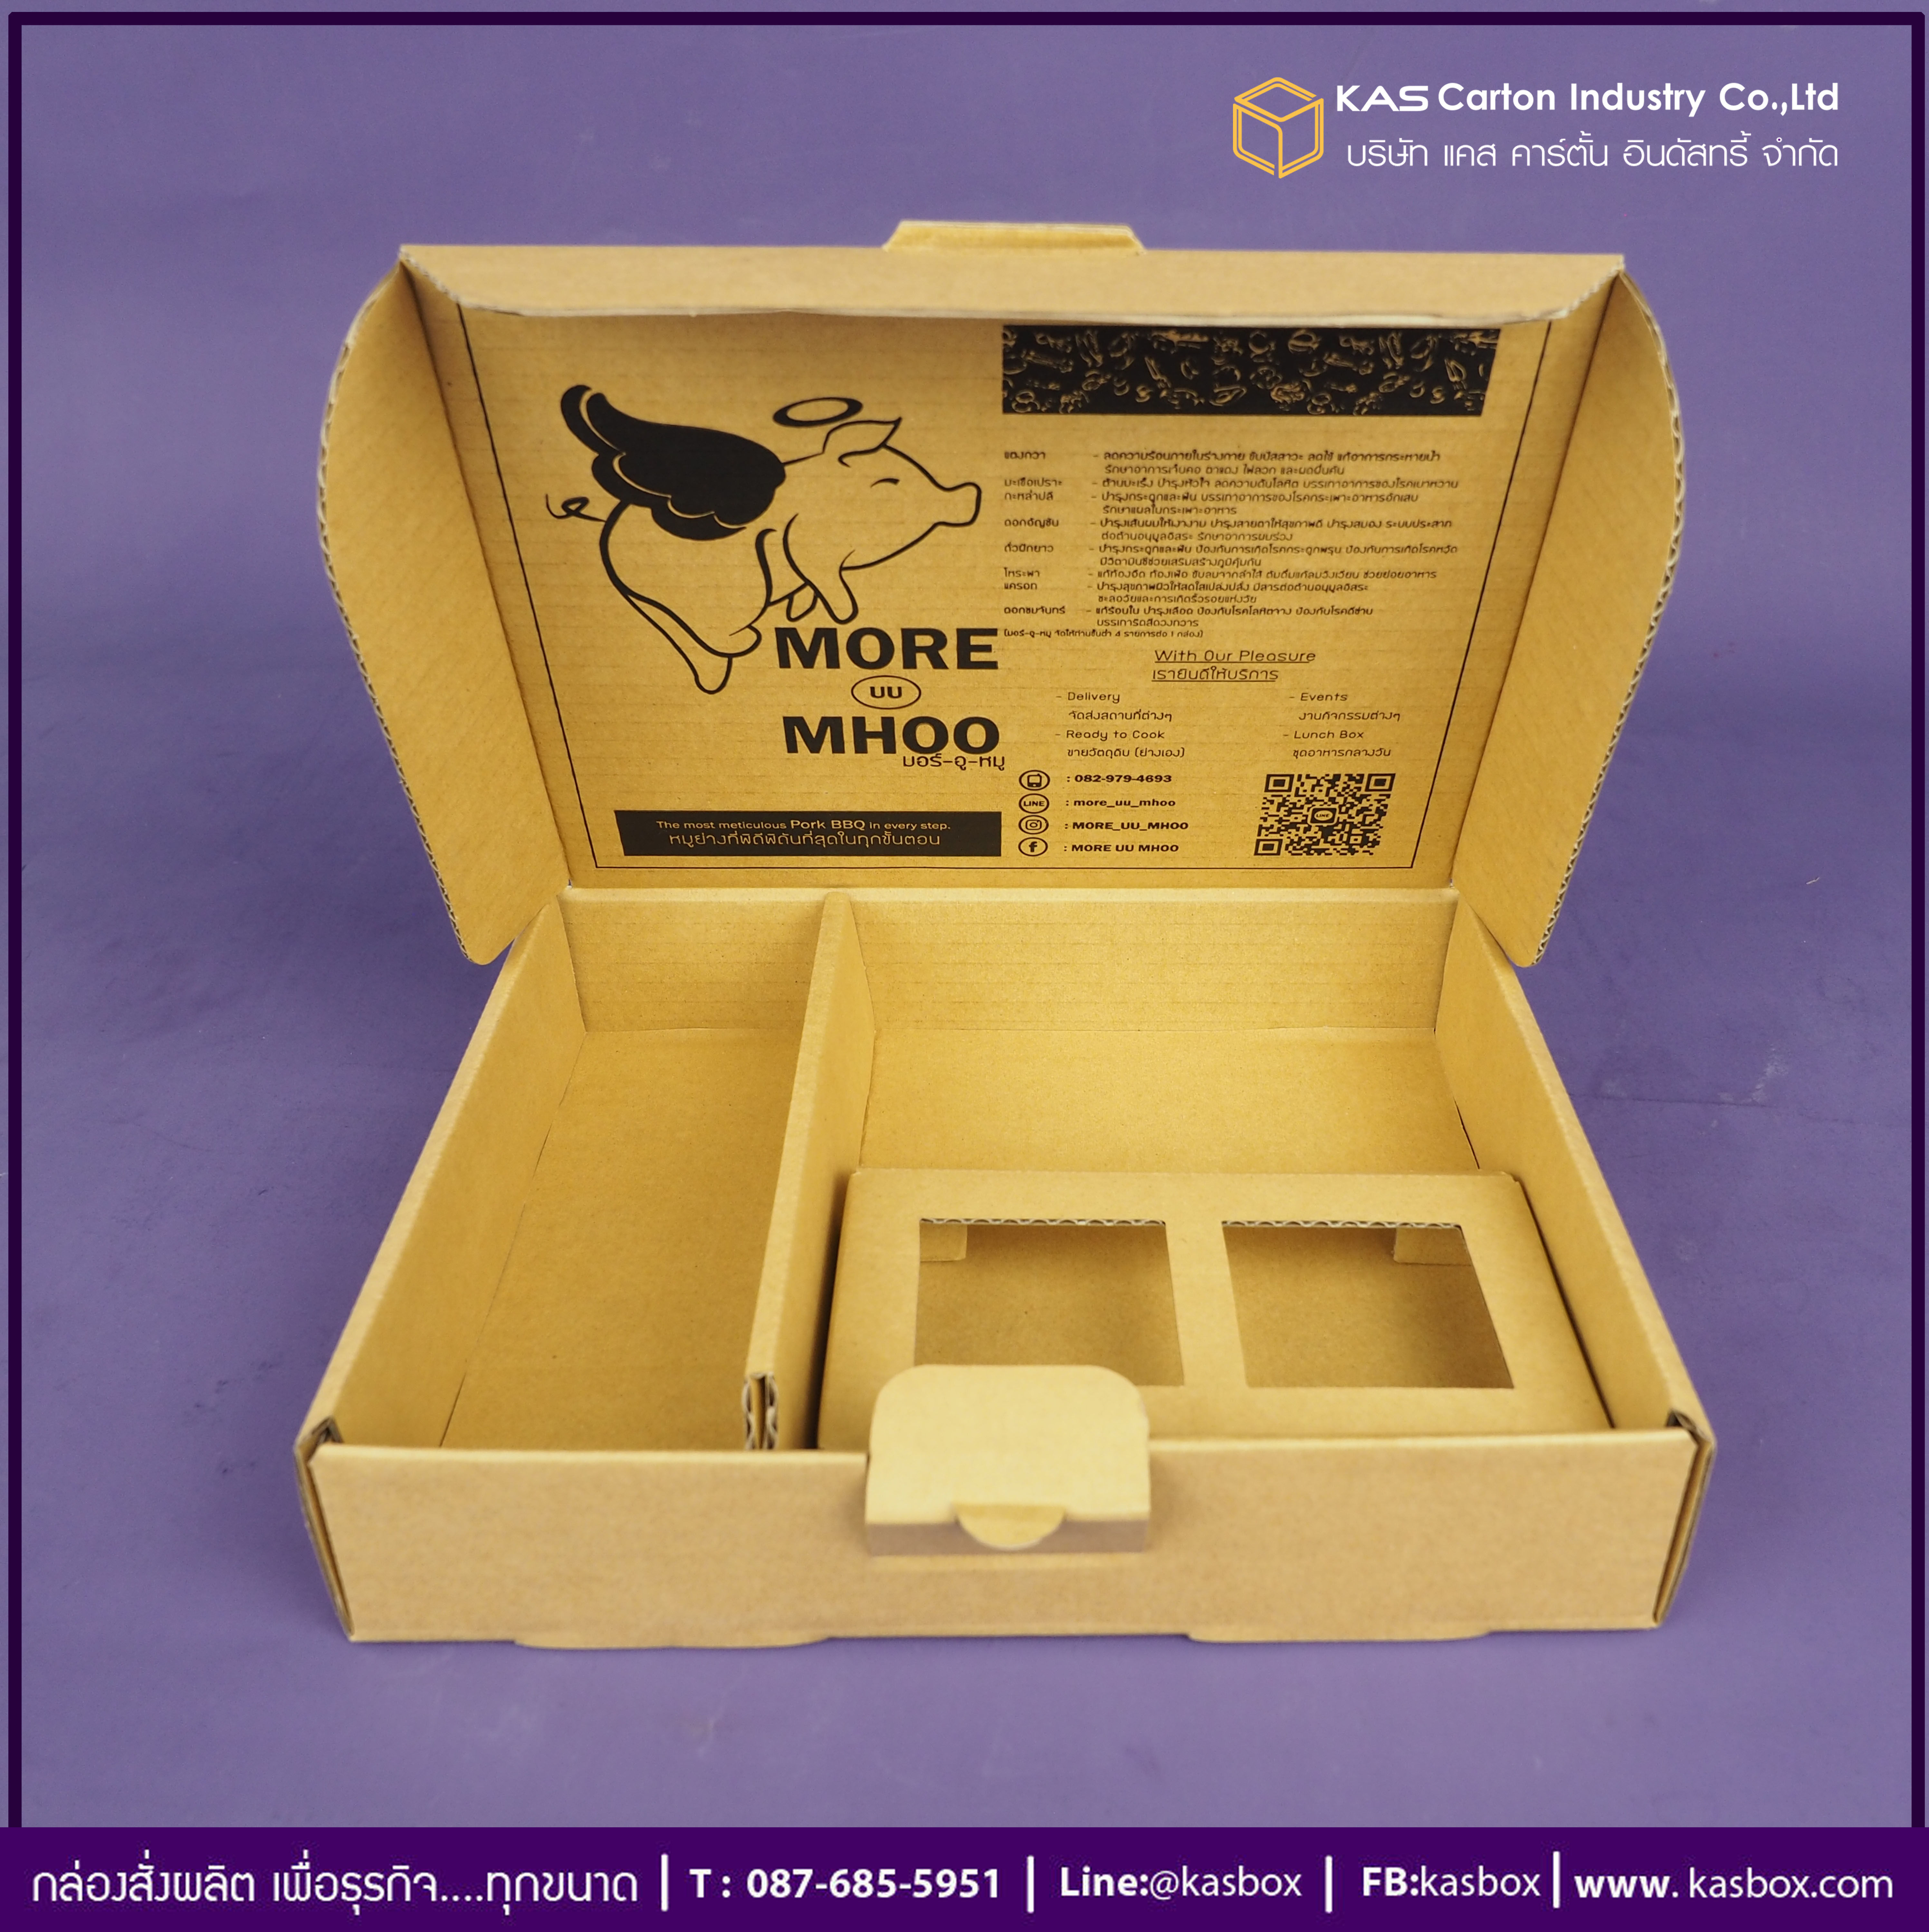 กล่องลูกฟูก สำเร็จรูป และ สั่งผลิต ตามความต้องการลูกค้า กล่องลูกฟูก SME กล่องกระดาษลูกฟูก กล่องอาหาร ชุดคอหมูย่าง More uu Moo